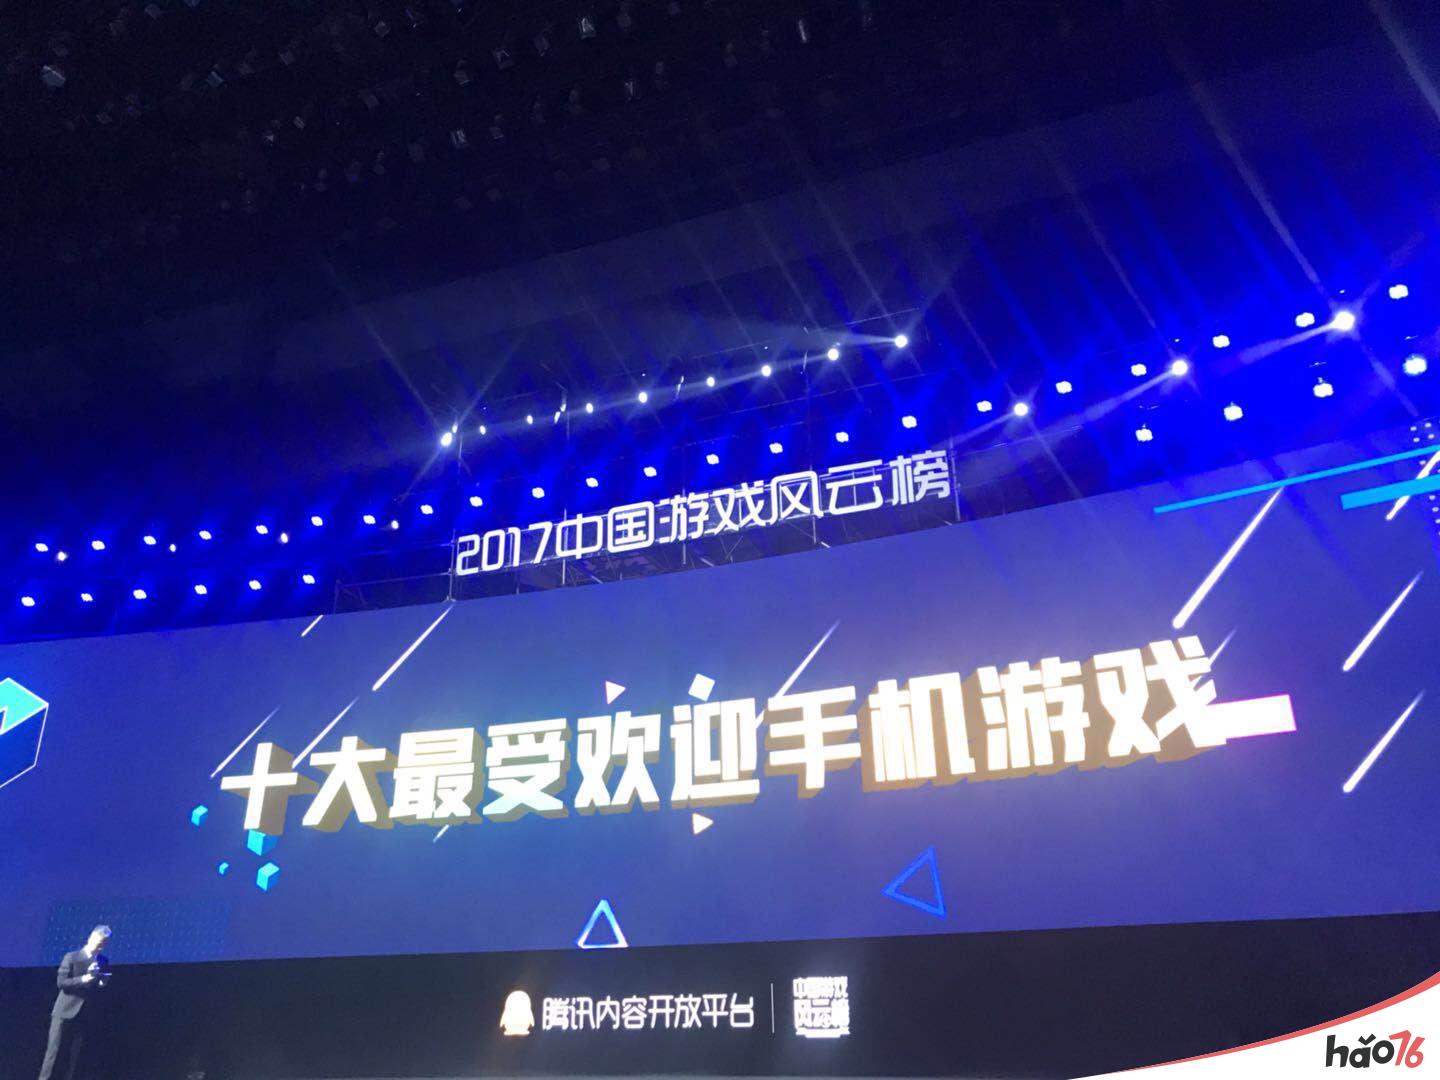 巨人网络荣获2017中国游戏风云榜3项大奖